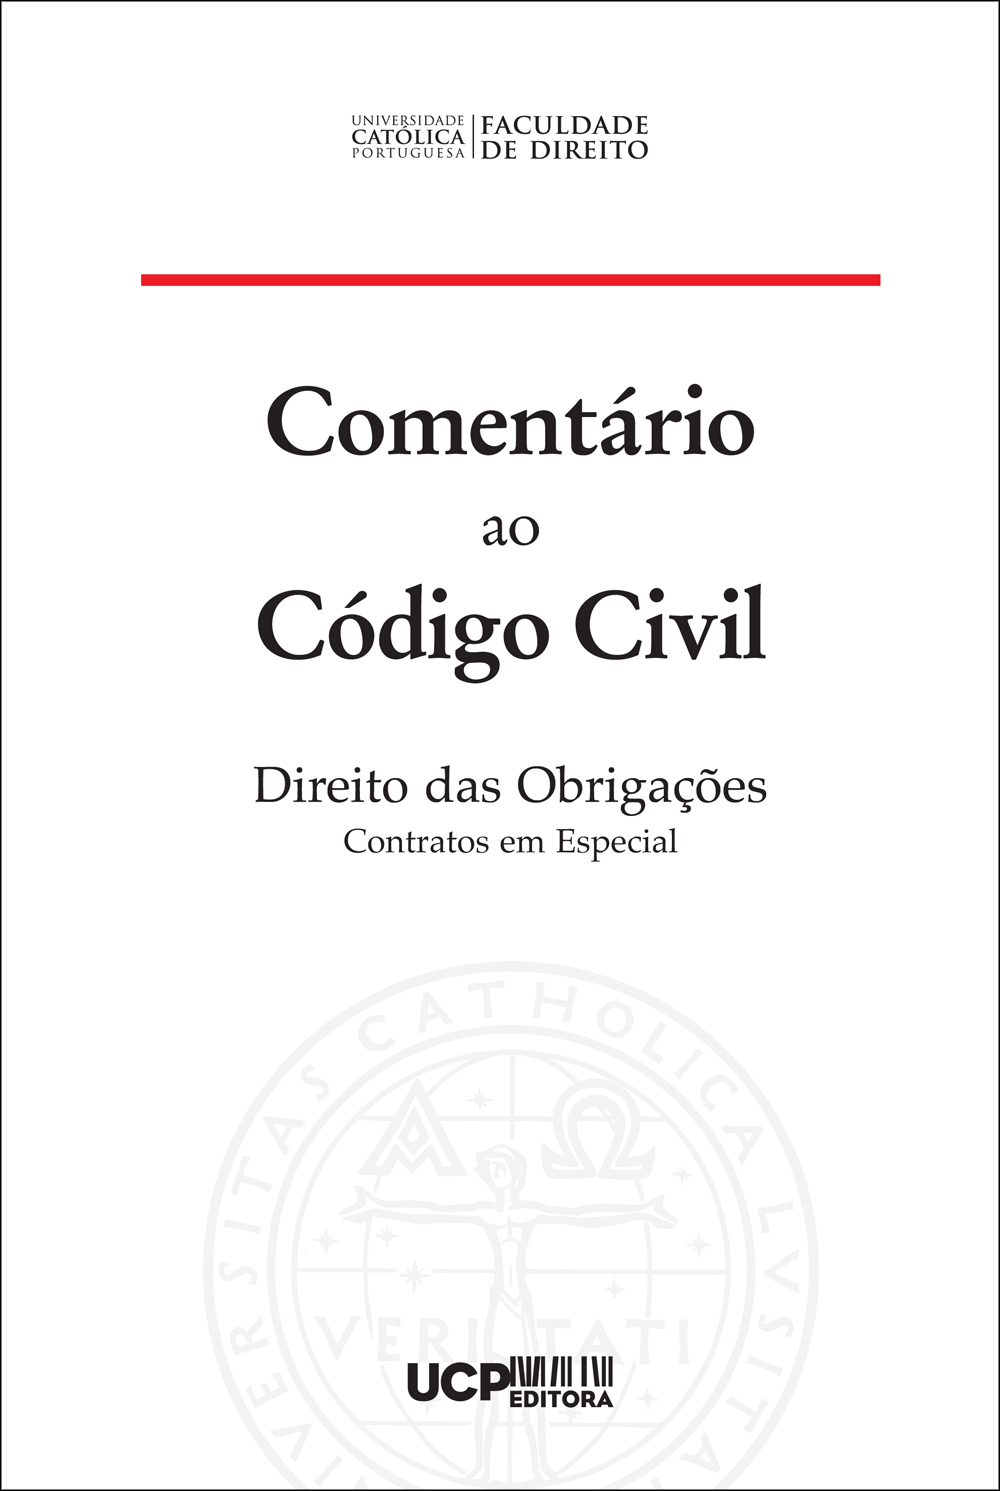 COMENTÁRIO AO CÓDIGO CIVIL
Direito das Obrigações - Contratos em Especial